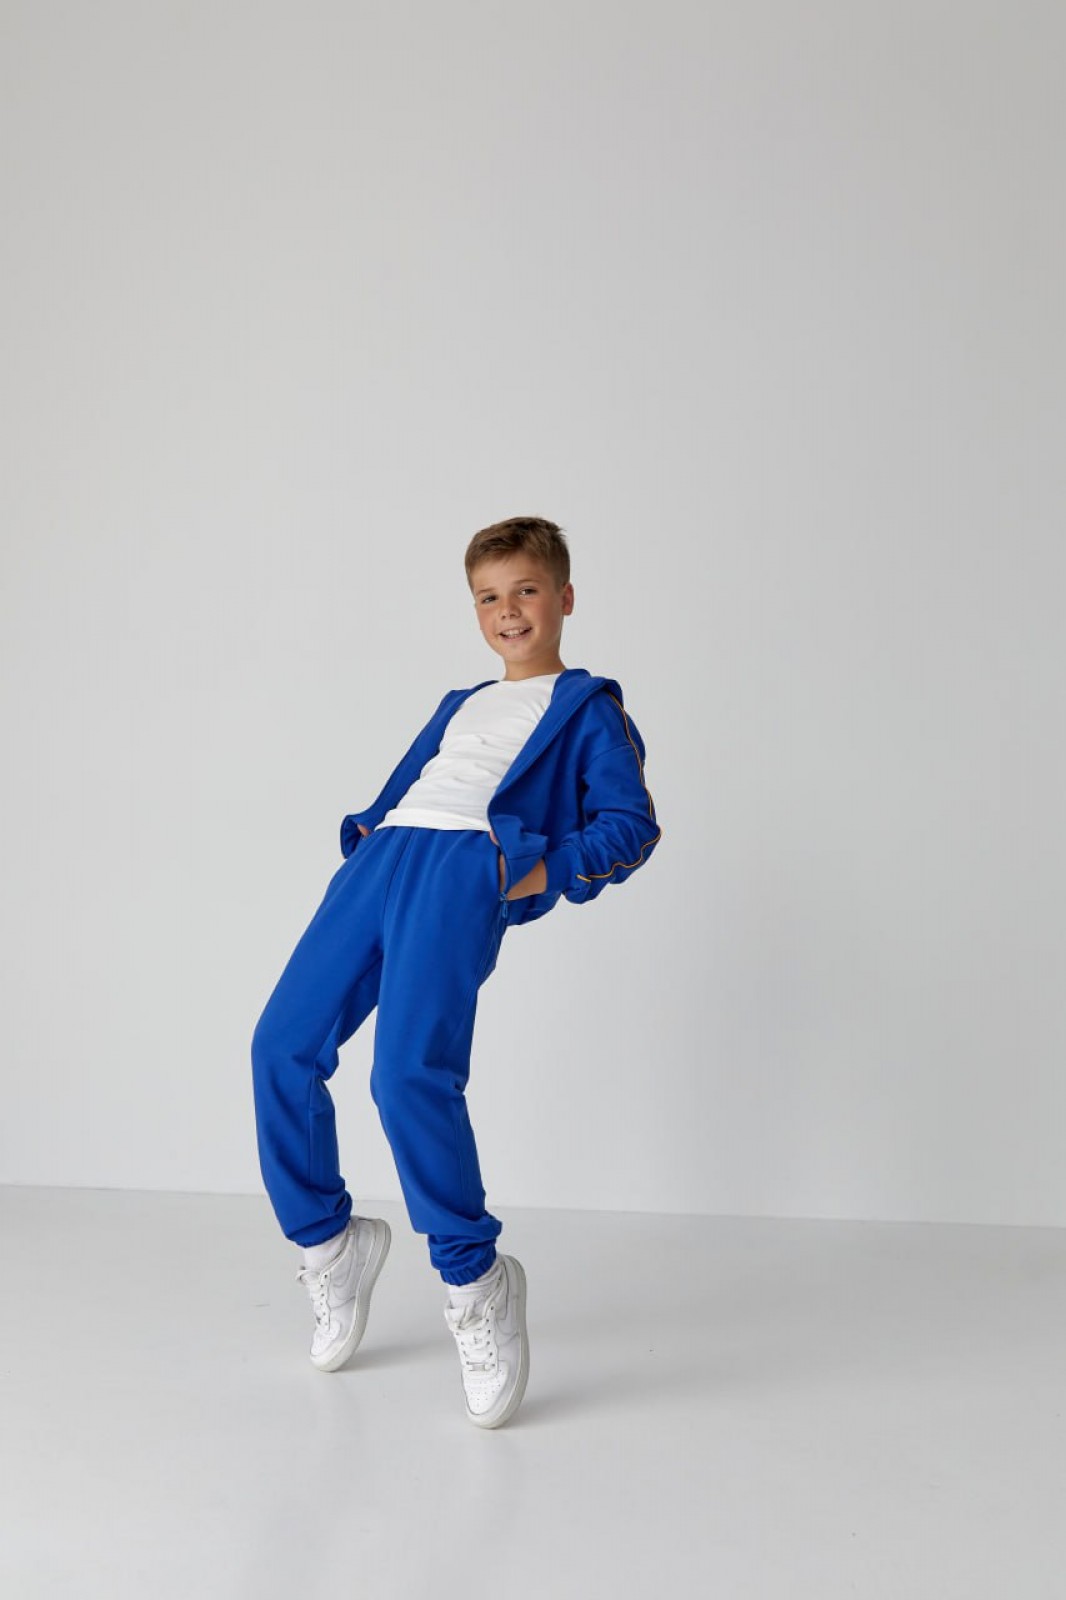 Дитячий спортивний костюм для хлопчика електрик р.116 439127